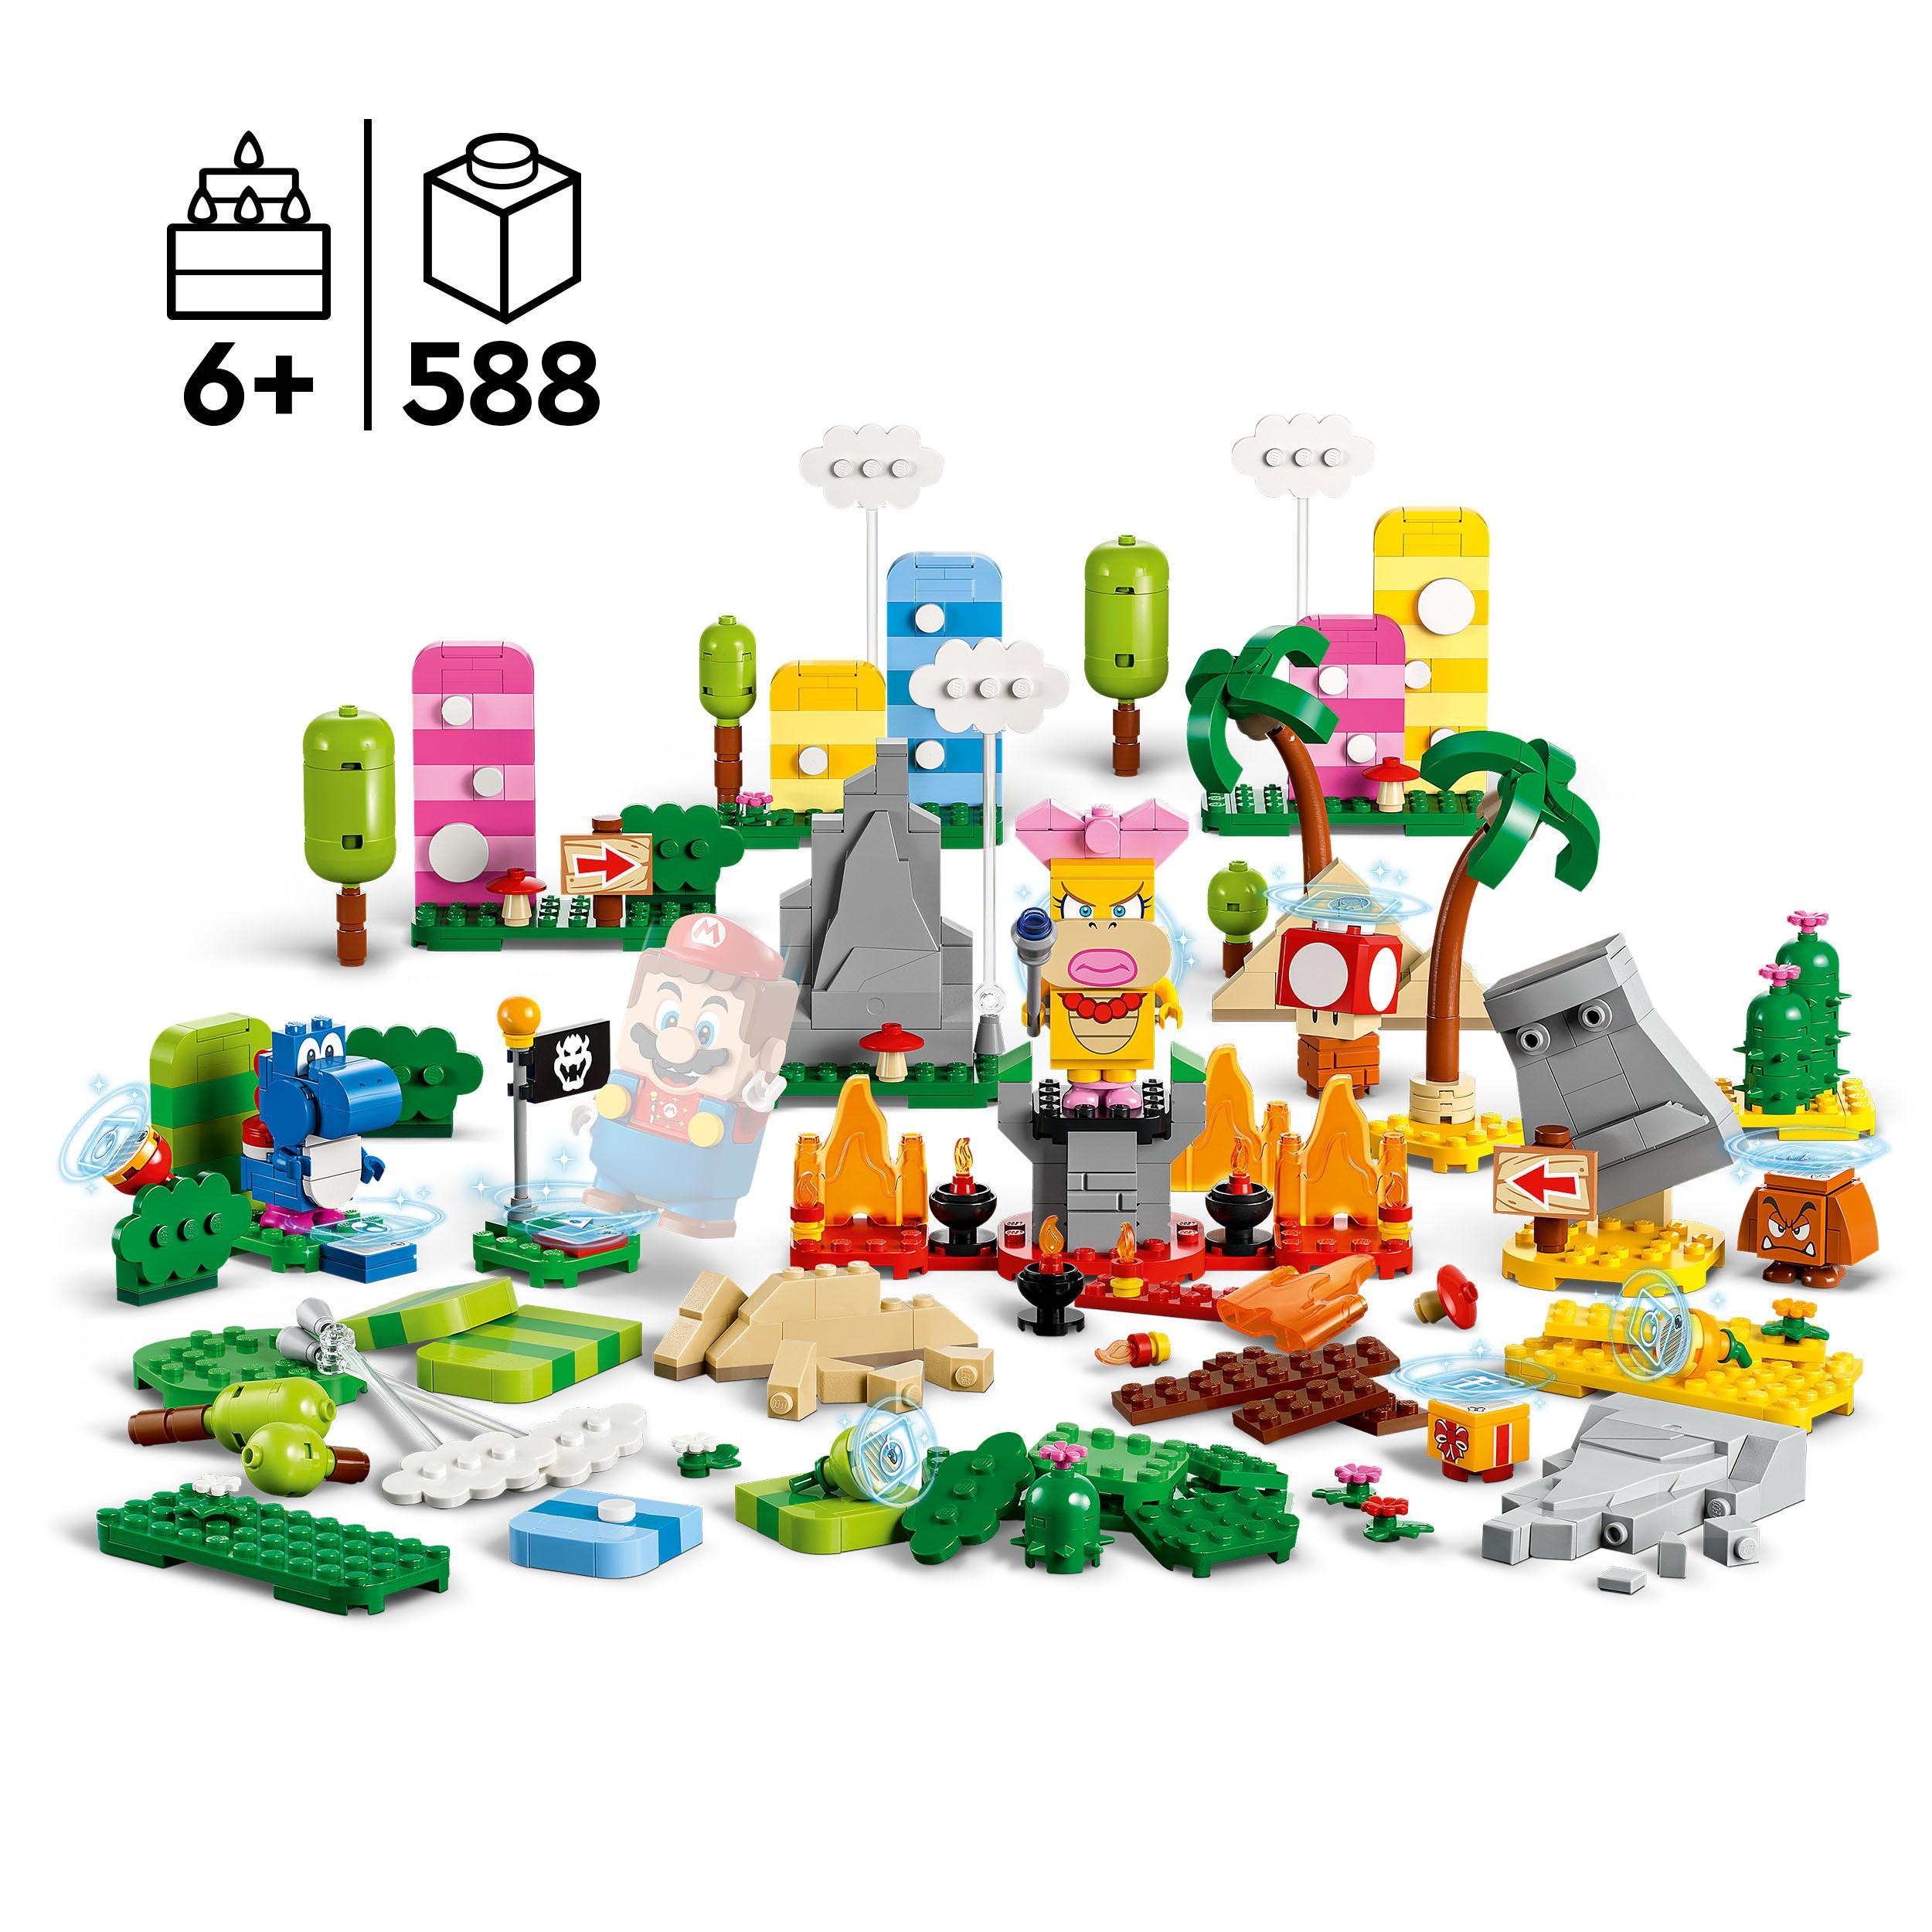 Lego super mario 71418 toolbox creativa, crea livelli con figure, elementi erbosi, desertici e lavici da abbinare agli starter pack - LEGO® Super Mario™, Super Mario